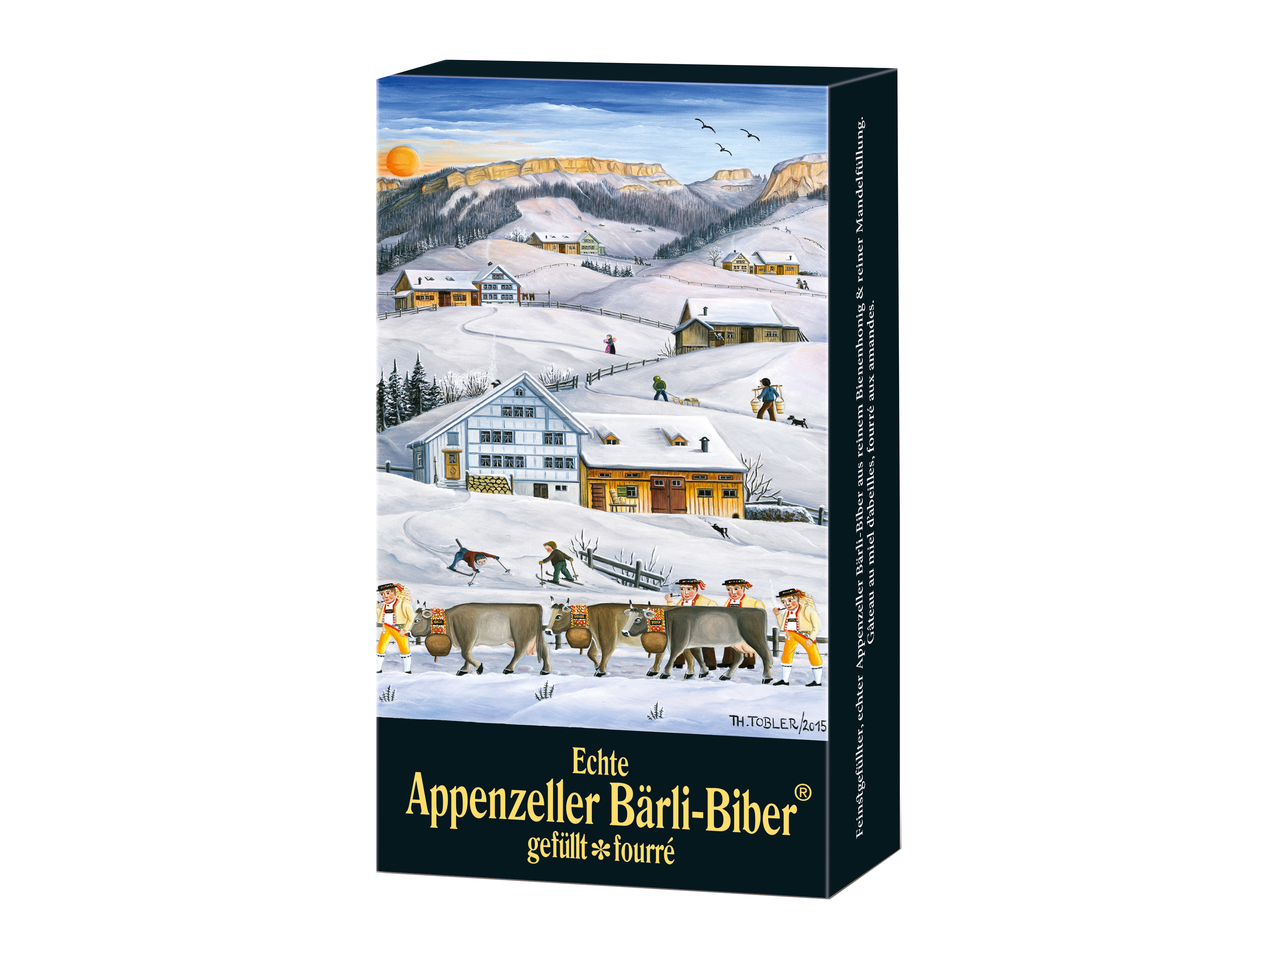 Baerli-Biber de l'Appenzell Bischofberger dans une boîte cadeau